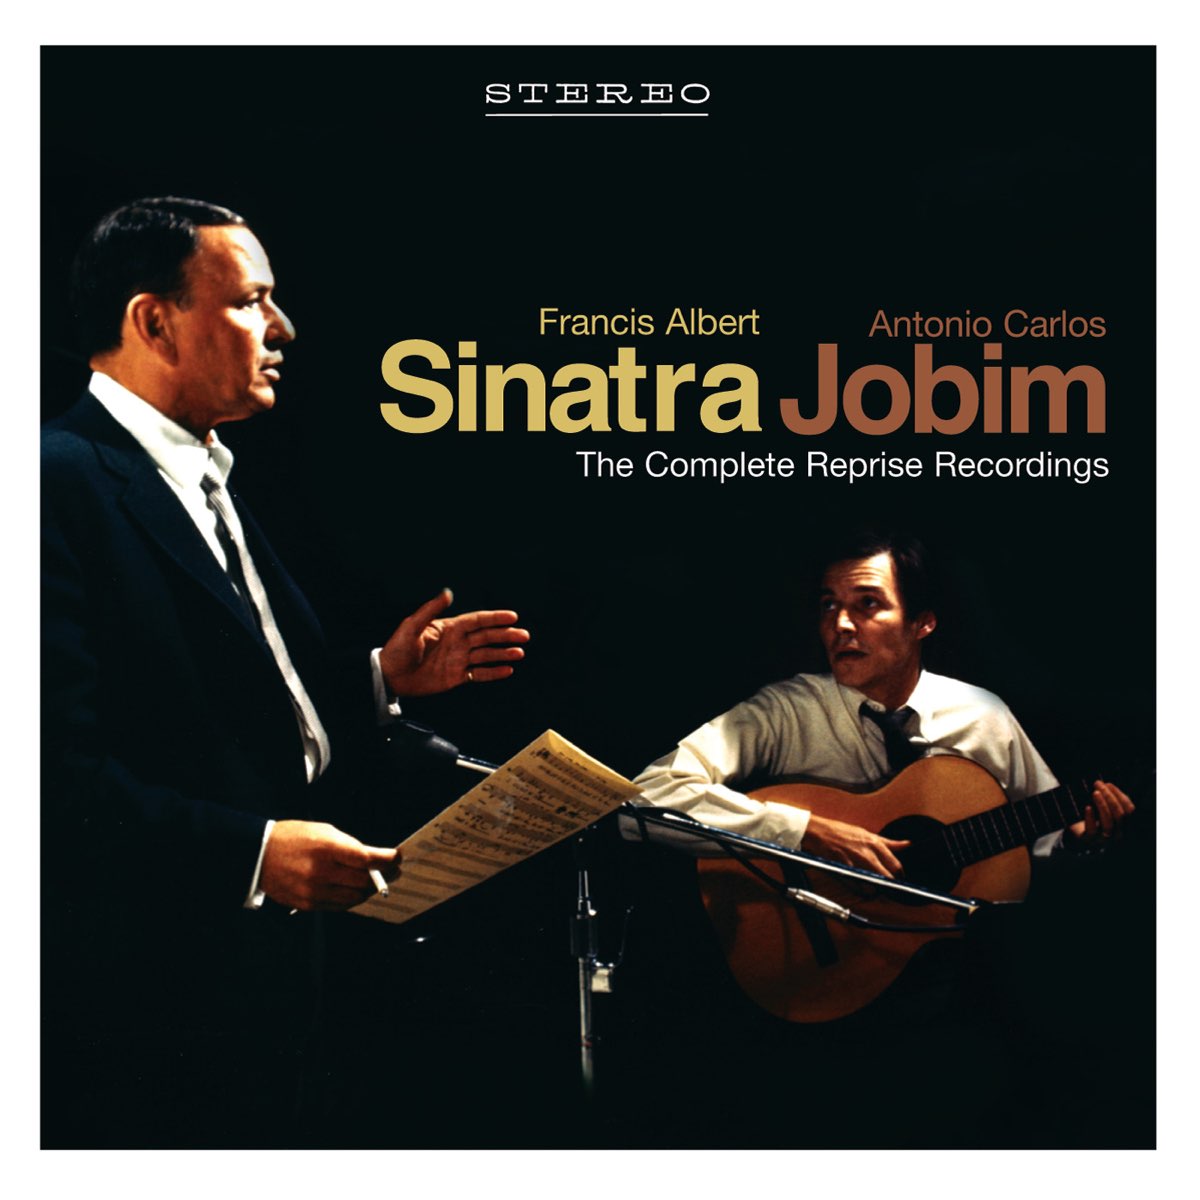 Francis Albert Sinatra & Antonio Carlos